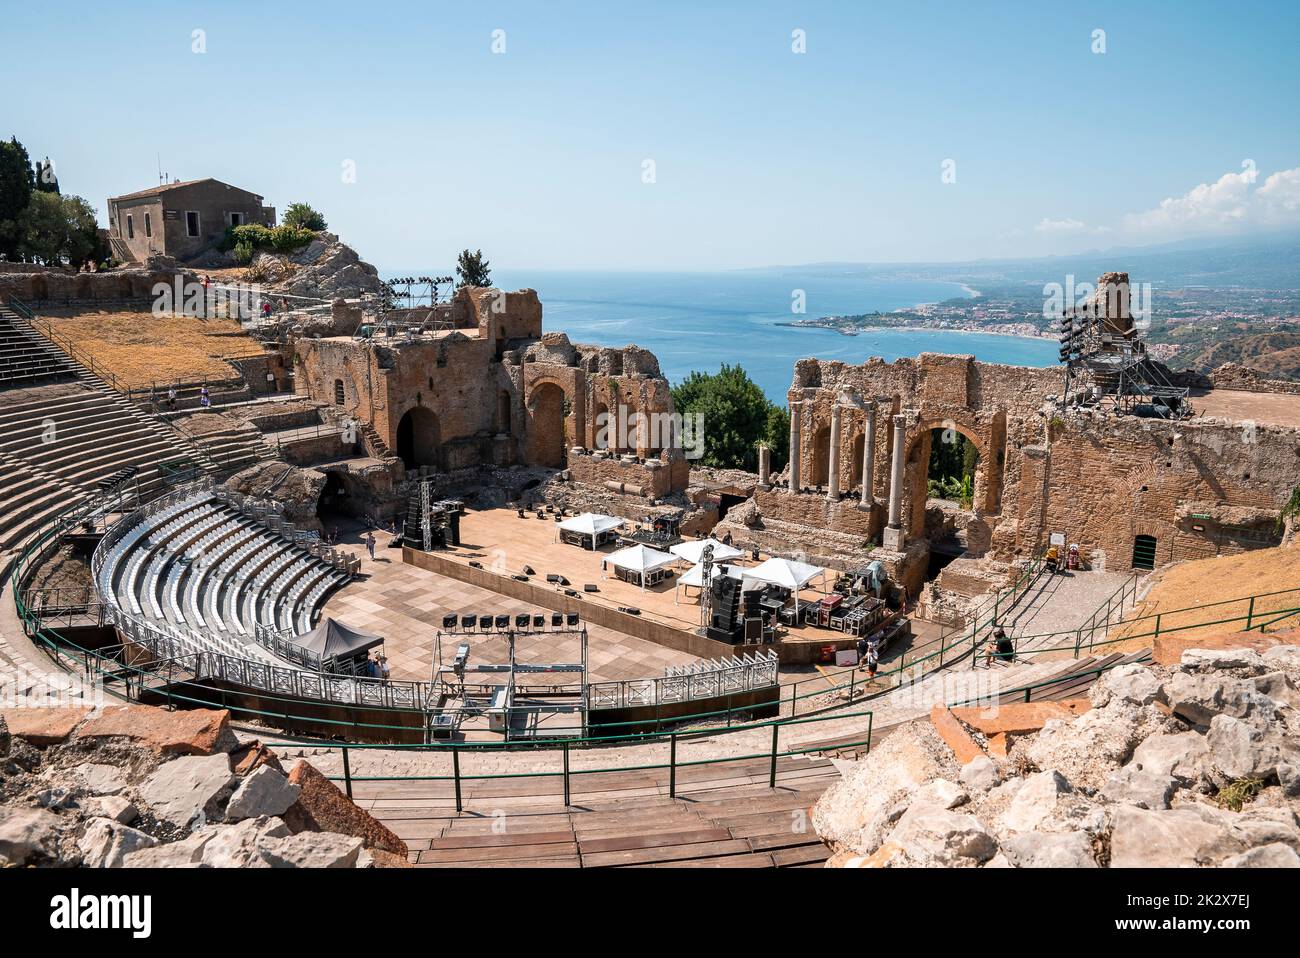 Vista panorámica de las antiguas ruinas del antiguo teatro griego en la costa mediterránea Foto de stock